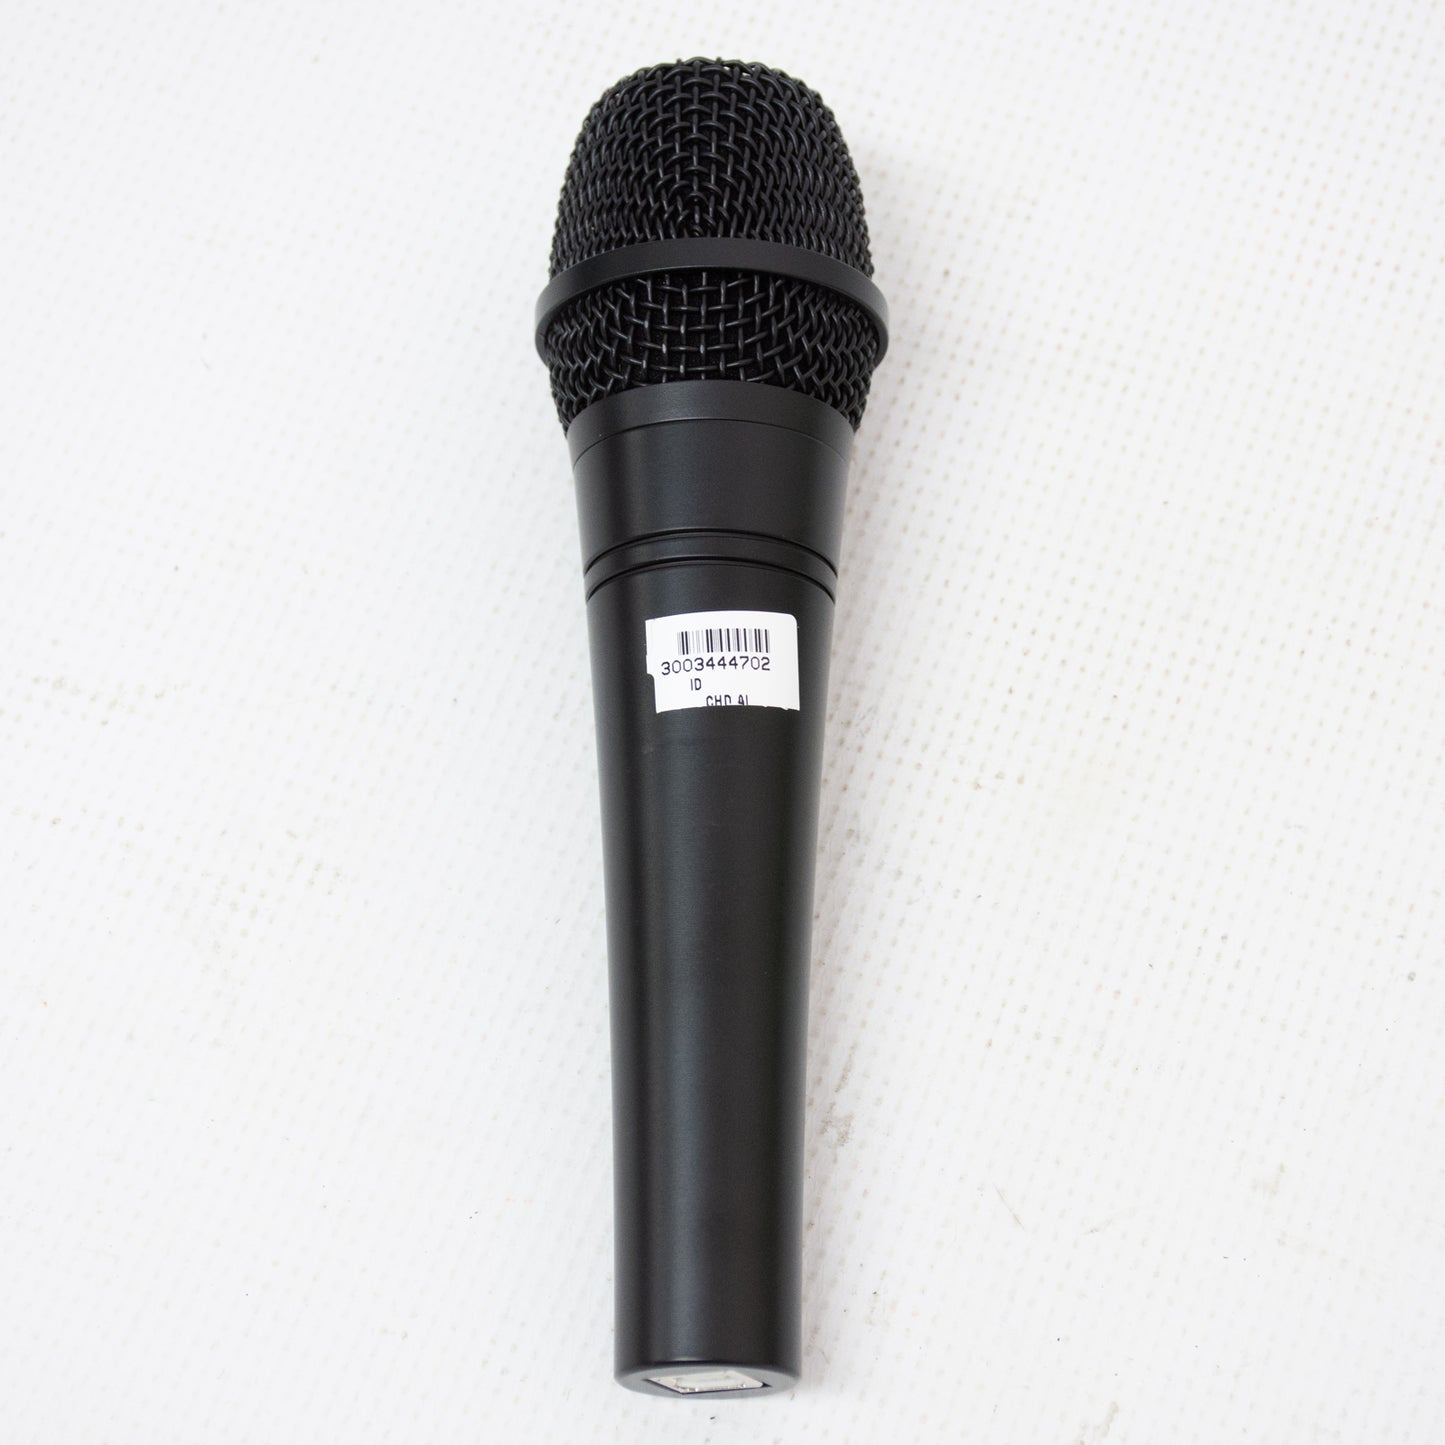 Kit de micrófono de estudio Dubler